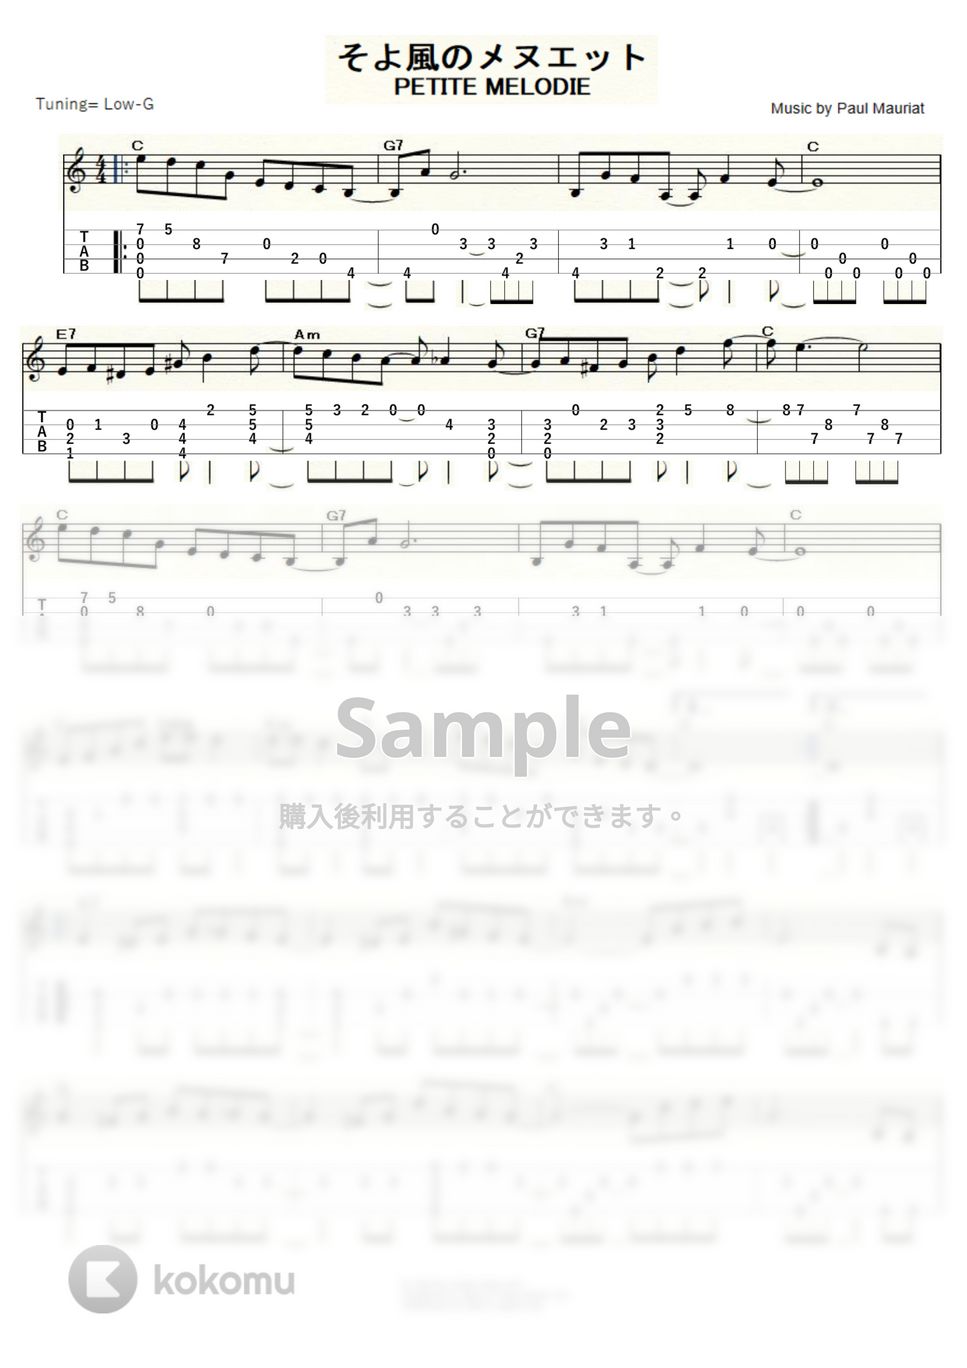 ポール・モーリア - そよ風のメヌエット (ｳｸﾚﾚｿﾛ / Low-G / 中級) by ukulelepapa